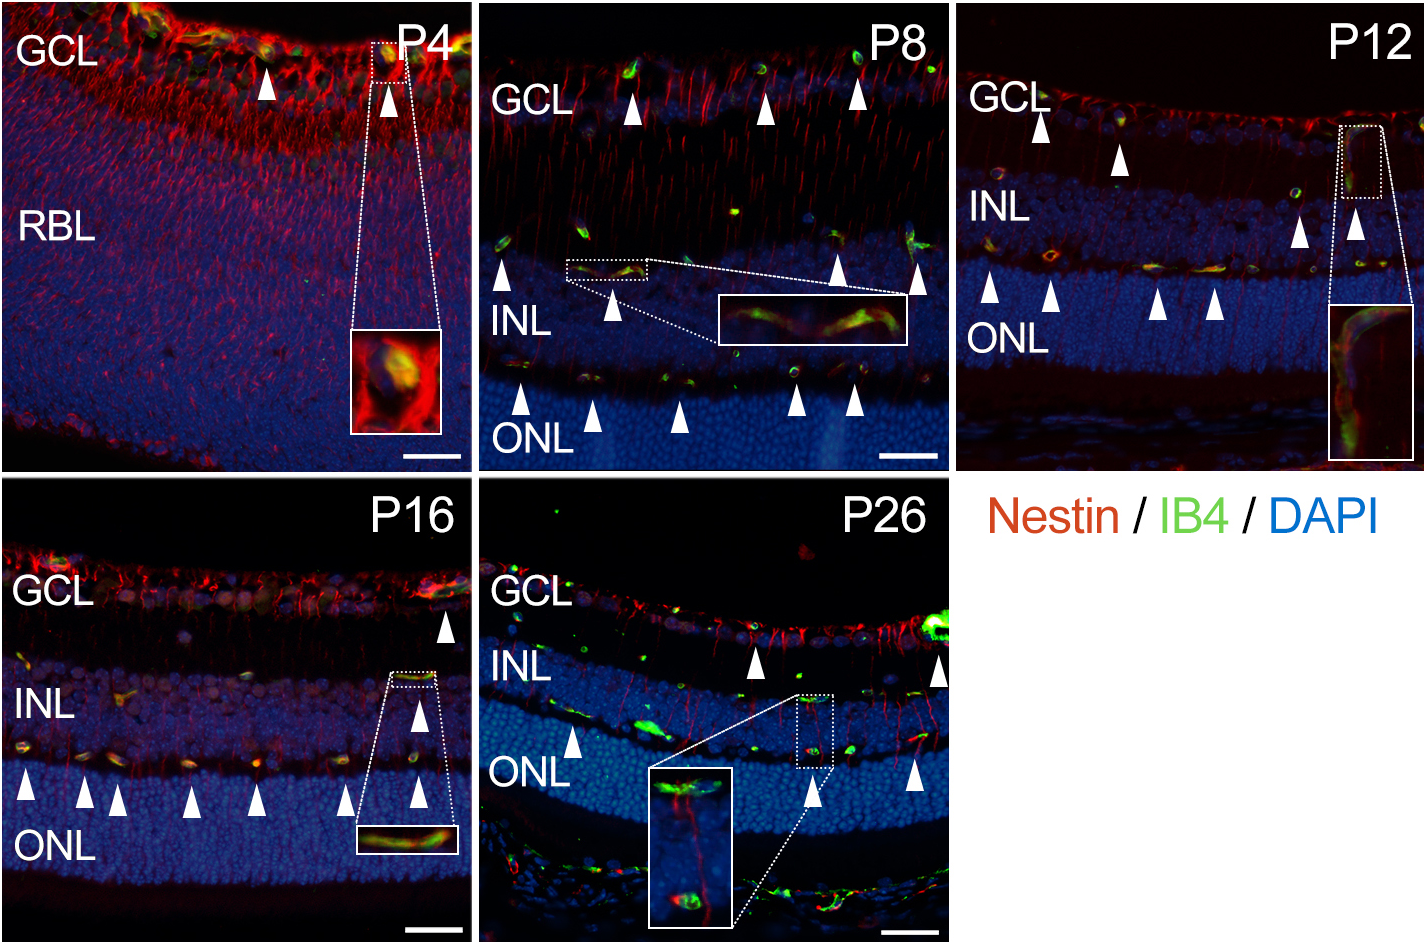 - 대한안과학회지 2016년 제 57 권 제 3 호 - 결 생쥐의 망막혈관 발생 과정에서 네스틴의 발현 생후 4일, 네스틴은 신경절세포층(ganglion cell layer)부 과 정상 생쥐 망막혈관 발생 생후 4일, 시신경유두에서부터 뻗어나가기 시작한 얕은 터 망막모세포층(retinoblast layer)에 걸쳐 강하게 발현되는 혈관 얼기는 중간 주변부